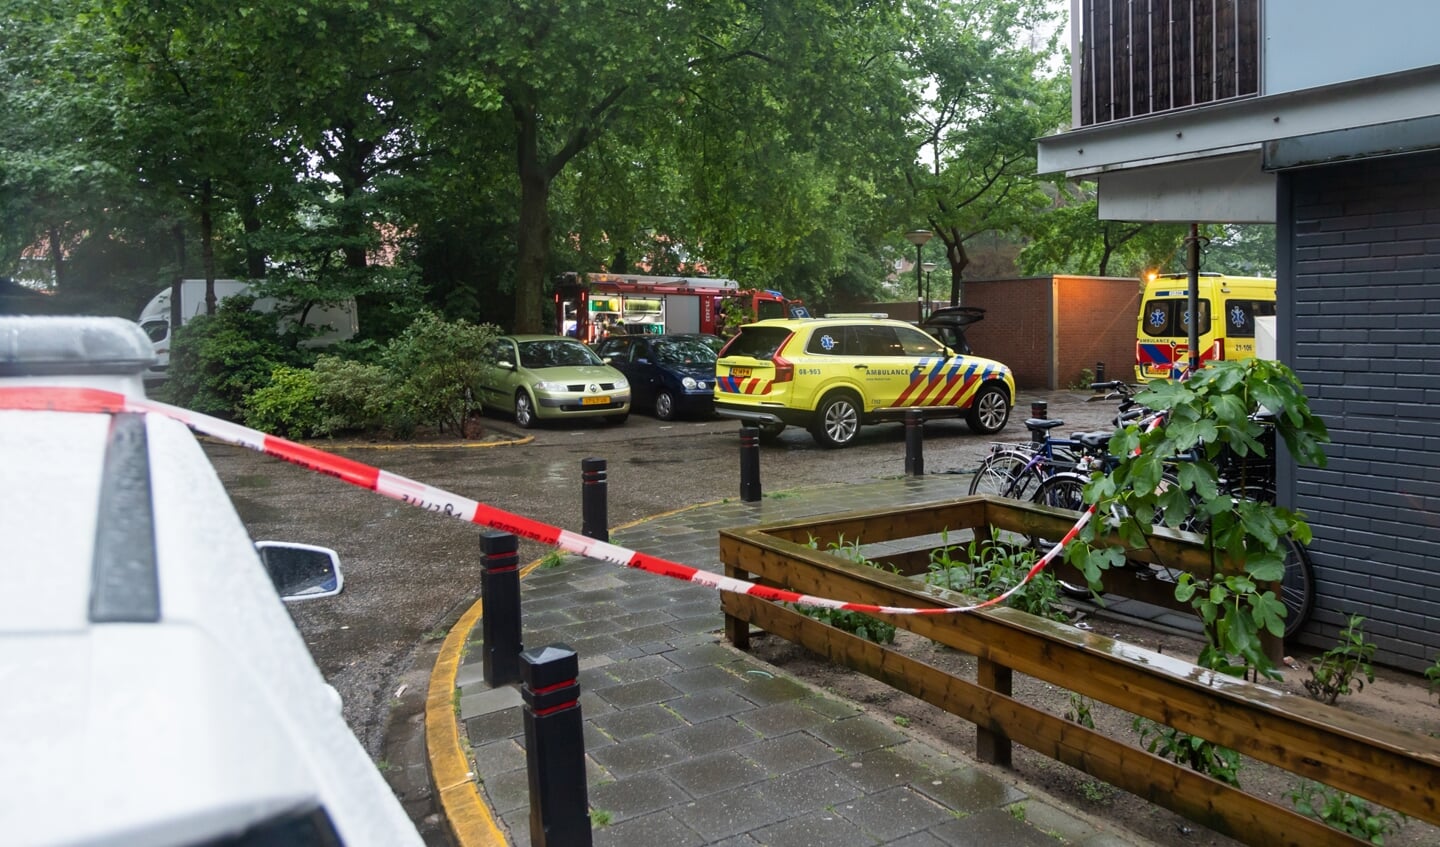 Een automobilist is zondagavond rond 19.55 uur aan De Engstoep in Rosmalen de berm in gereden en tegen een boom gebotst.